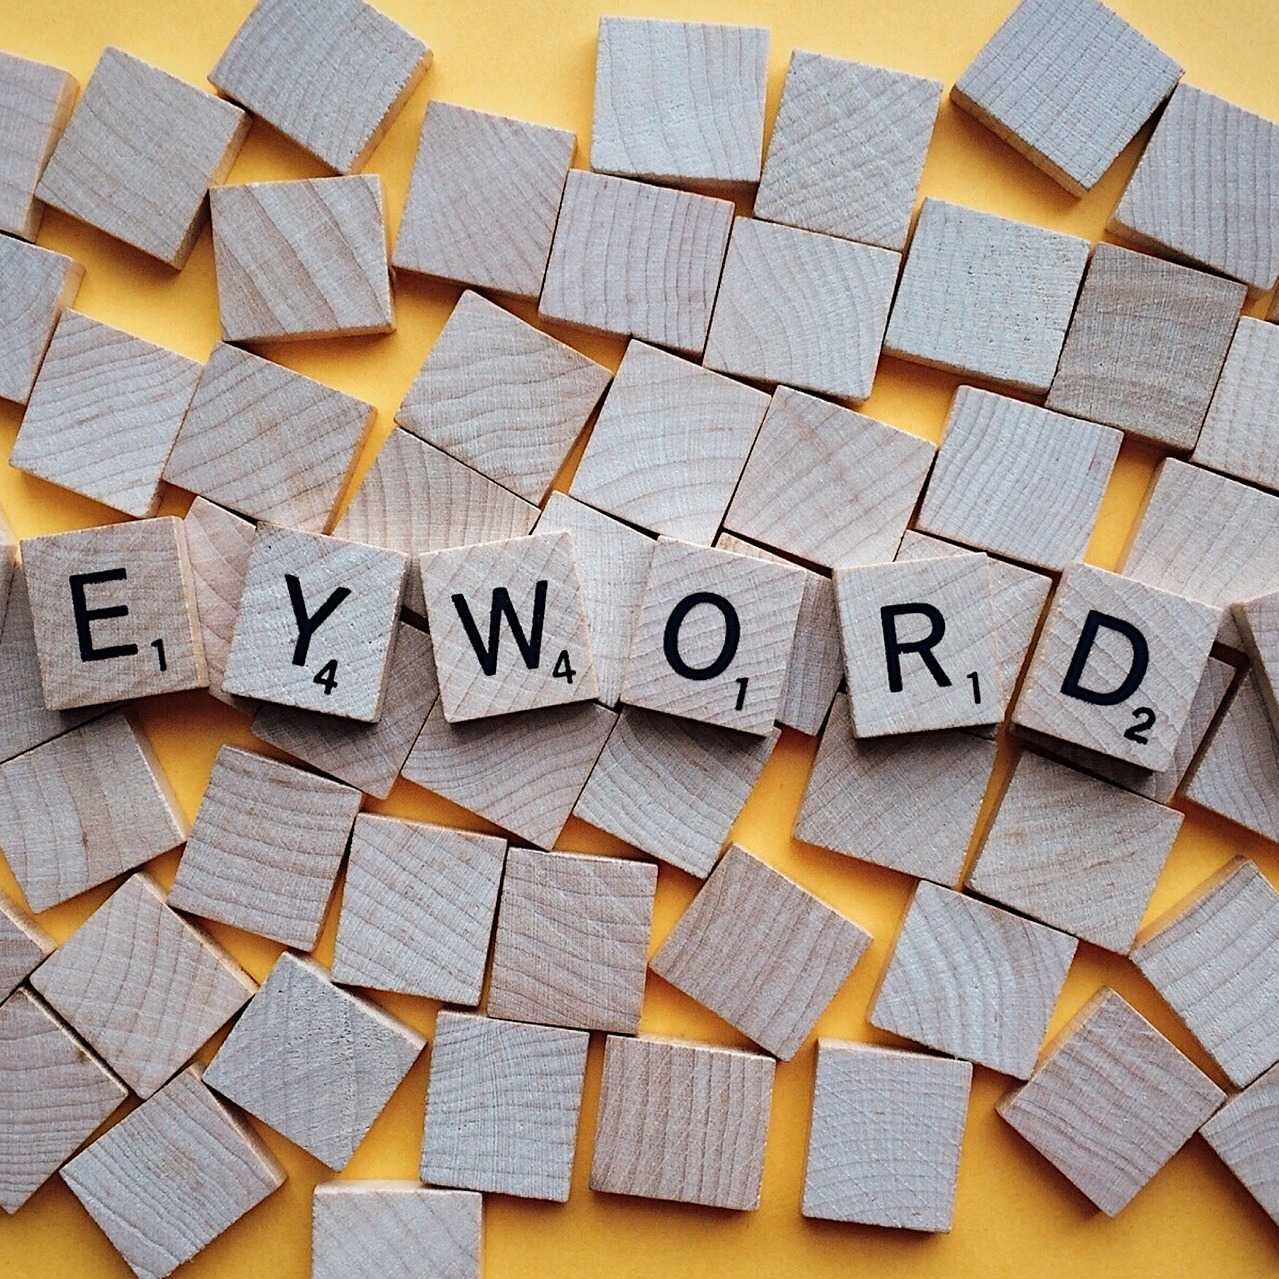 Thuật ngữ tiếng Anh Keyword có nghĩa là một hoặc nhiều từ mà người dùng viết vào công cụ tìm kiếm để tìm và tham khảo các trang web mà họ quan tâm